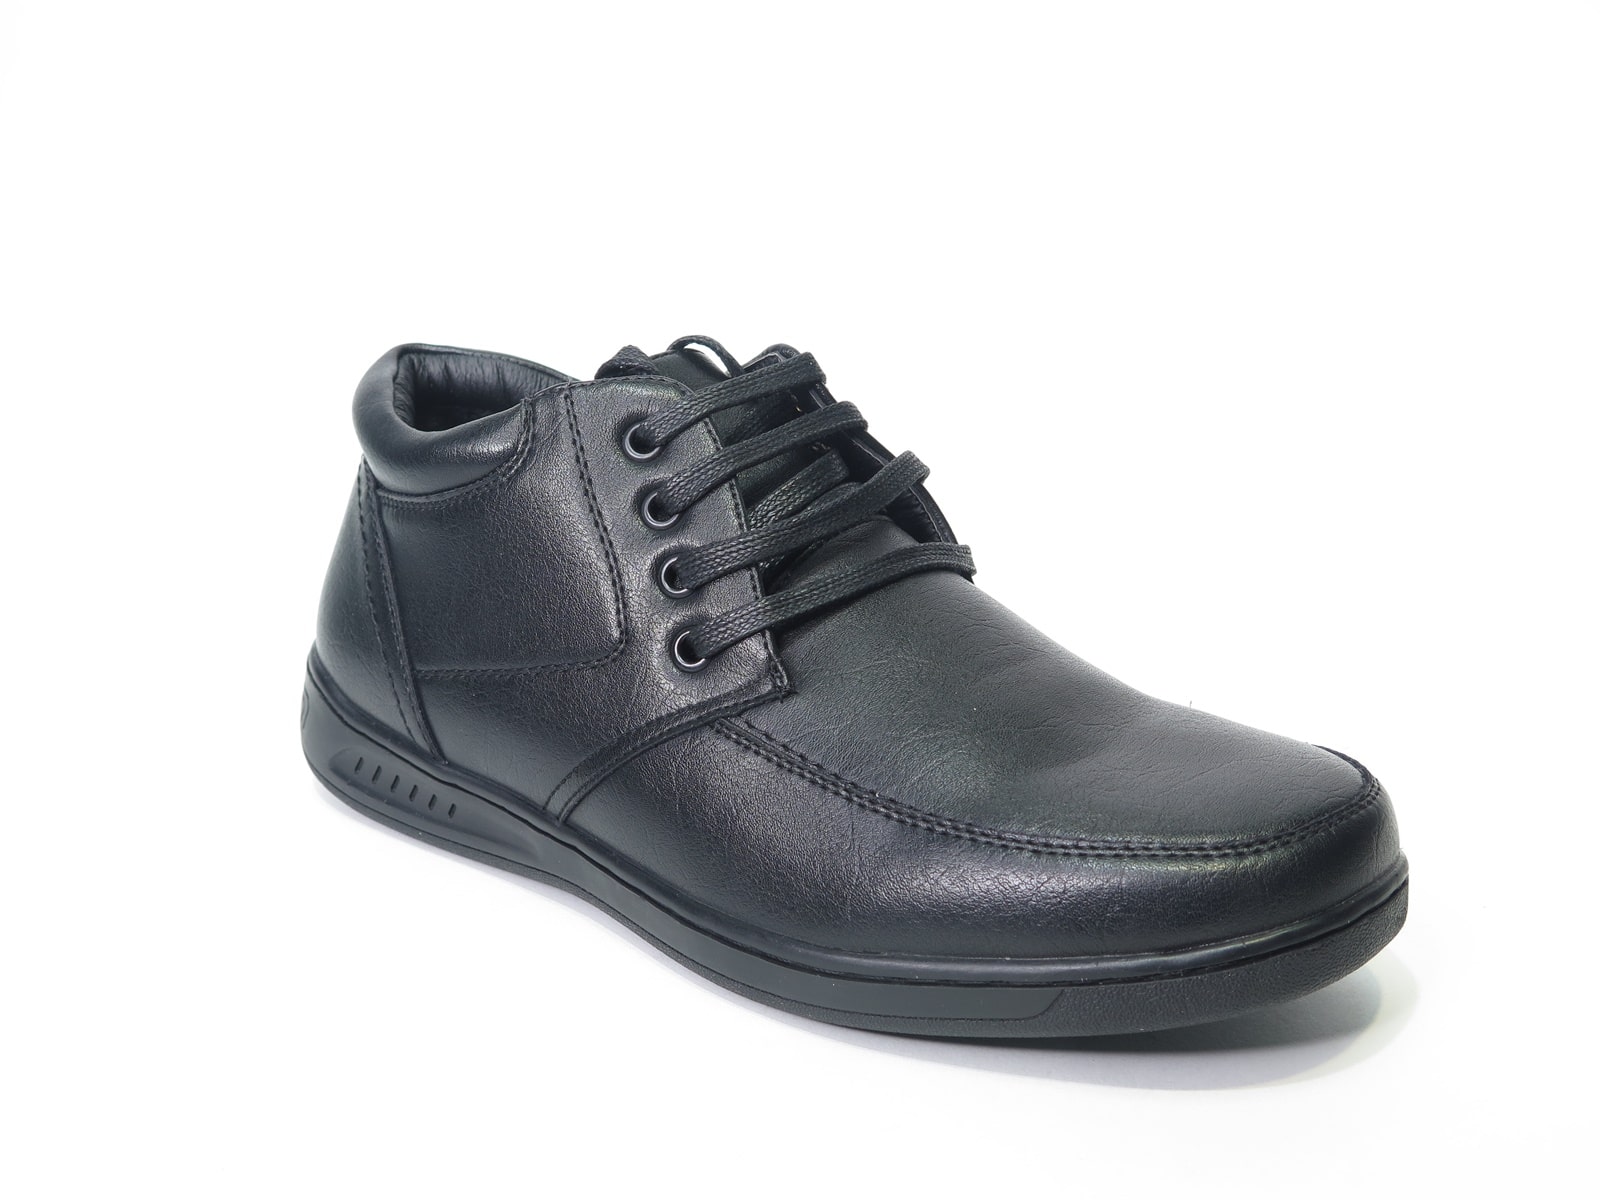 Черные мужские ботинки AILAIFA